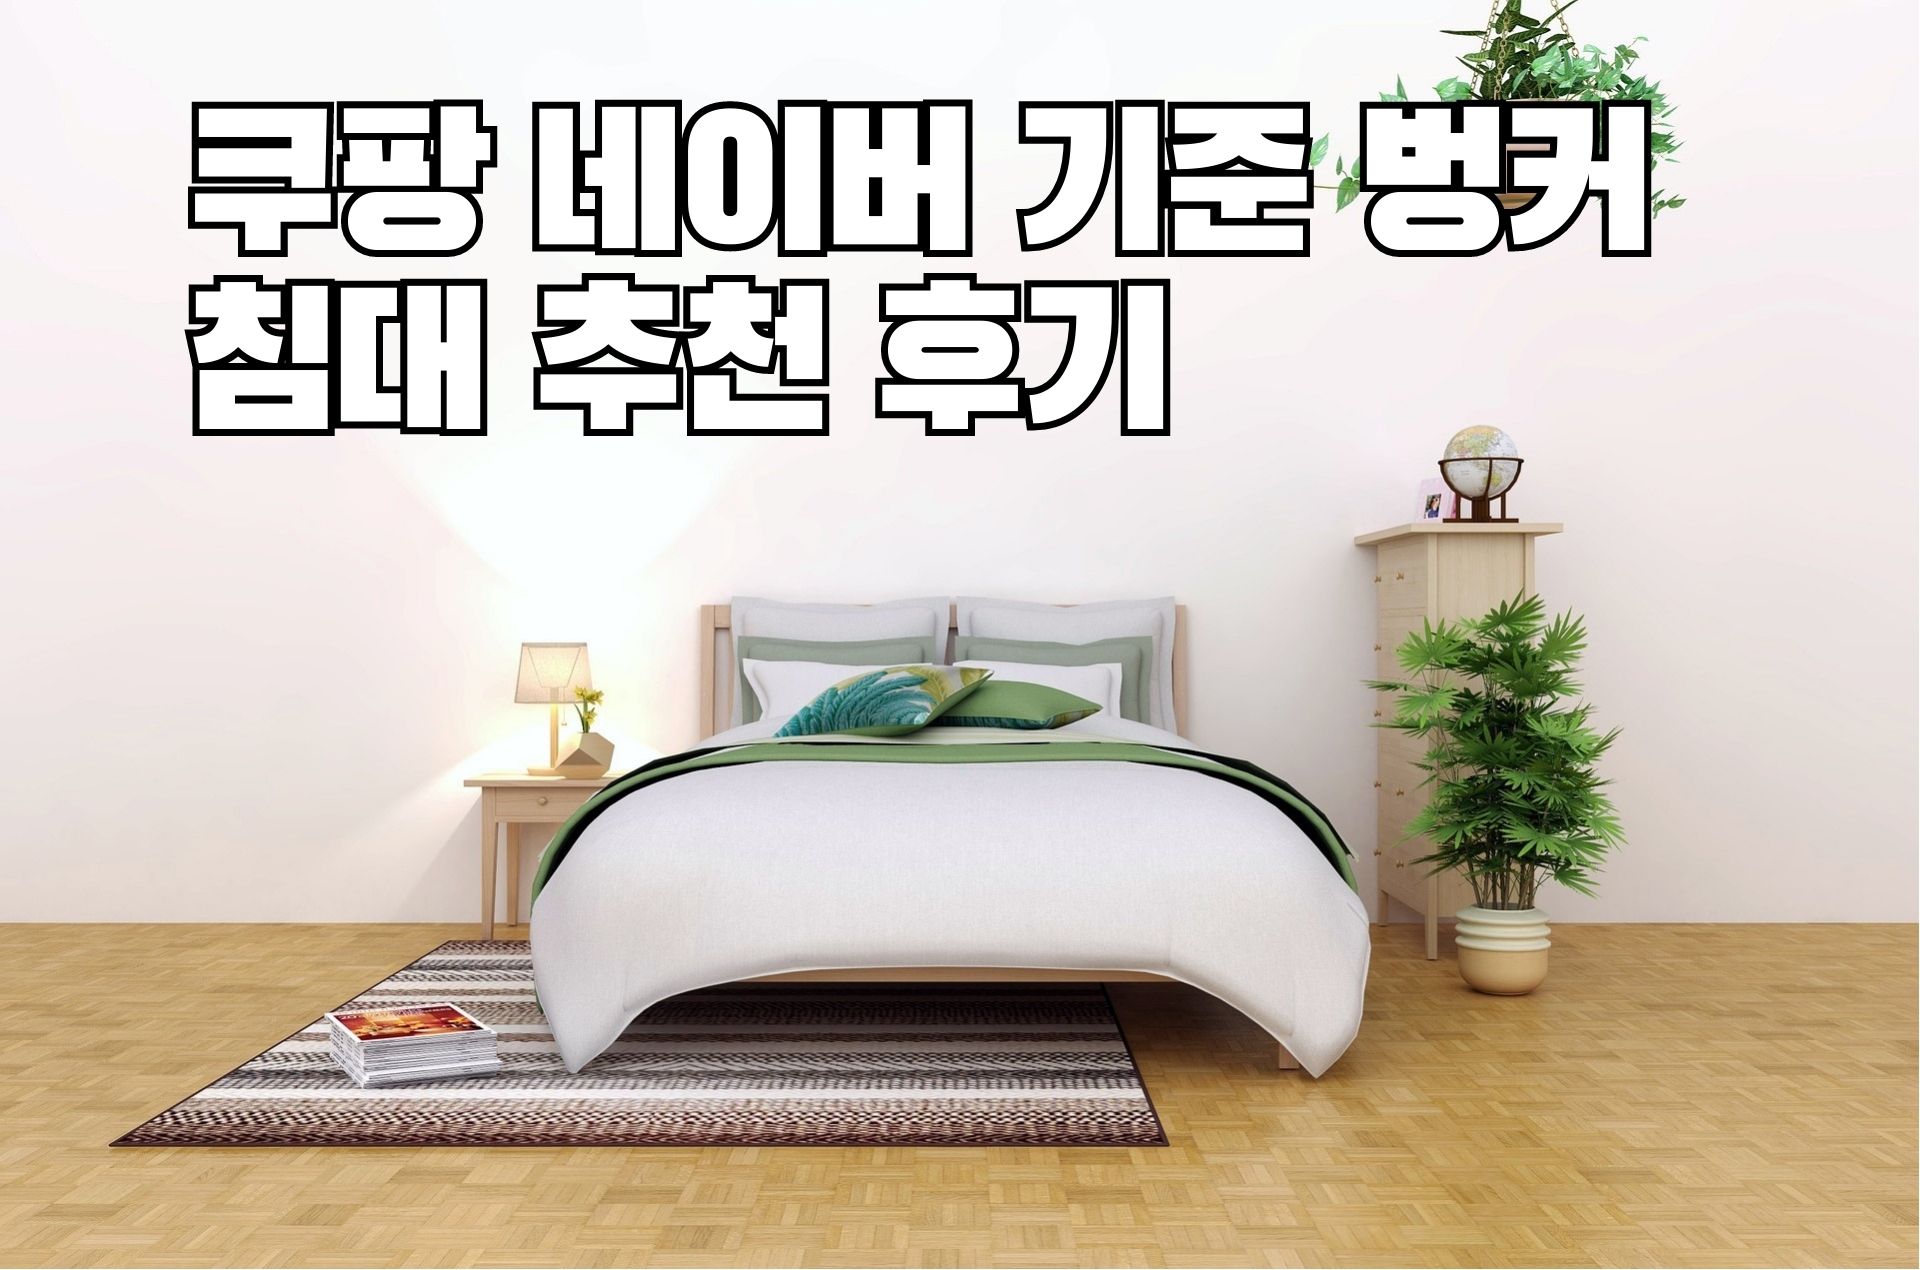 쿠팡 네이버 기준 벙커 침대 추천 후기